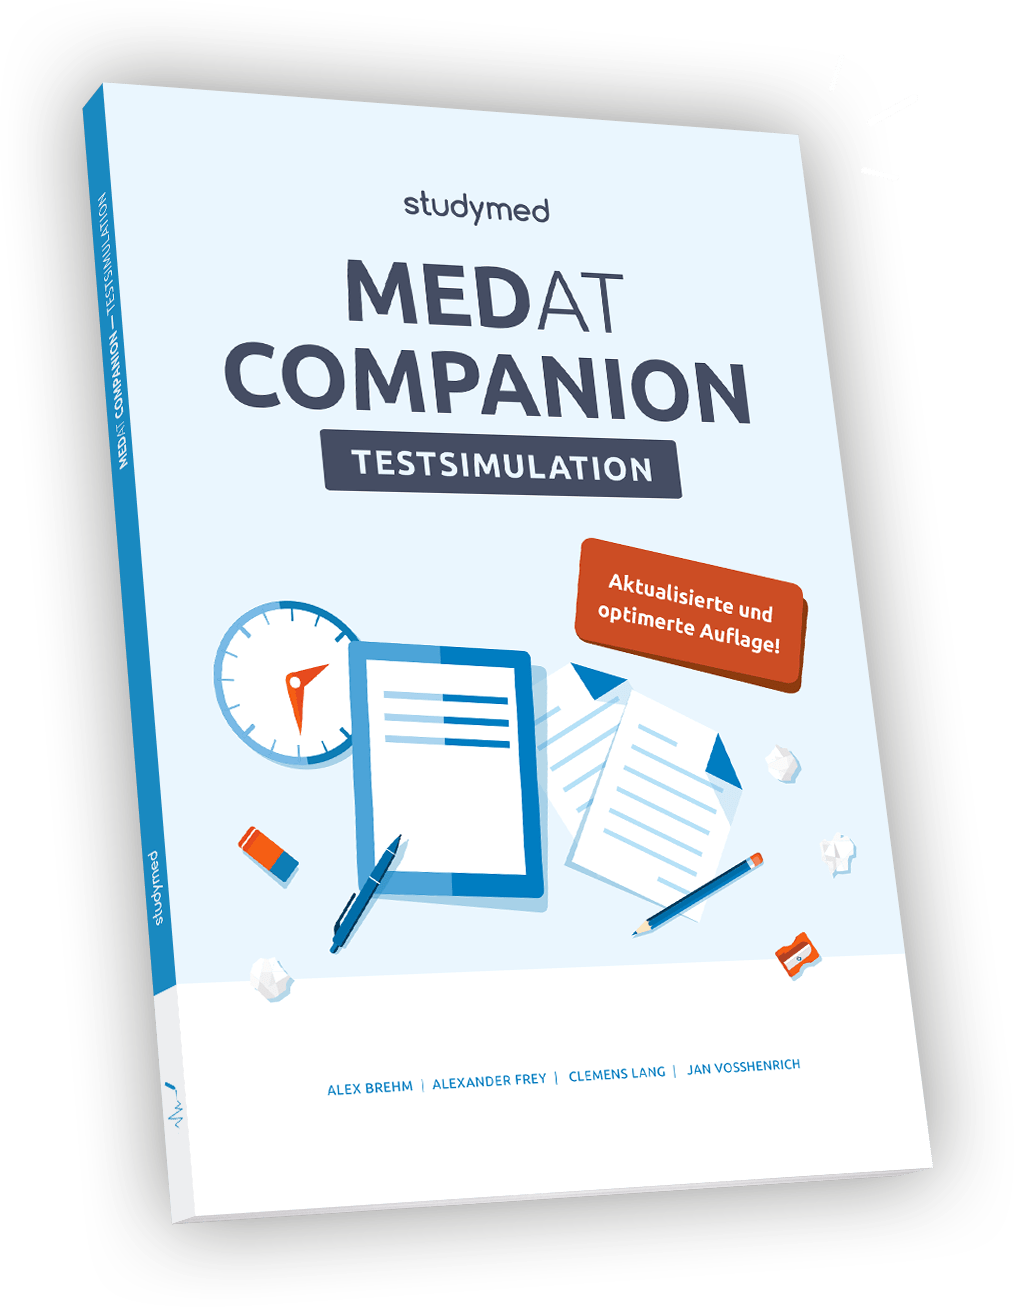 Das MedAT Companion Testsimulation Buch von studymed